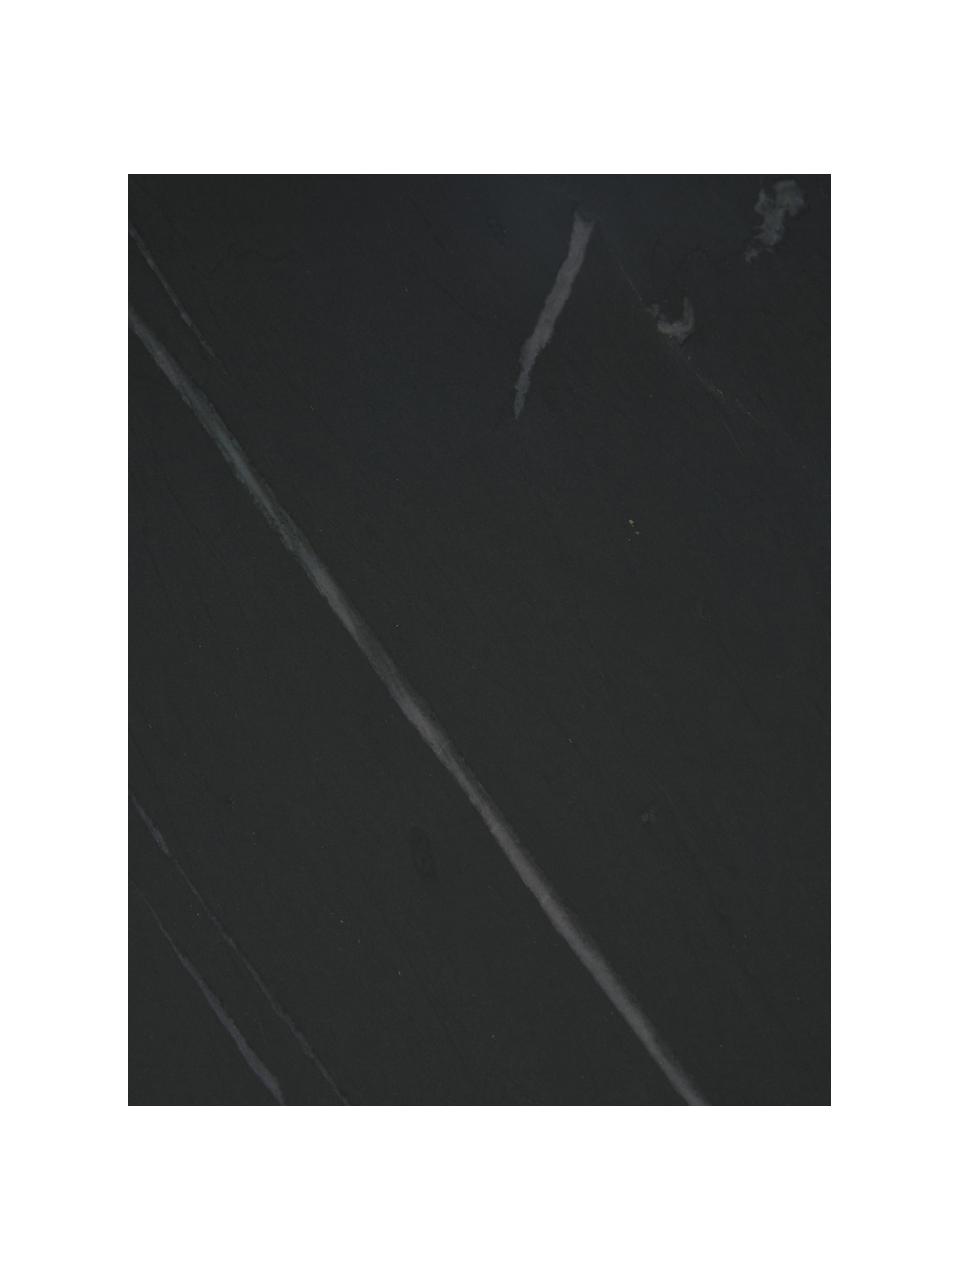 Marmor-Beistelltisch Alys, Tischplatte: Marmor, Gestell: Metall, pulverbeschichtet, Schwarz marmoriert, Schwarz, B 45 x H 50 cm